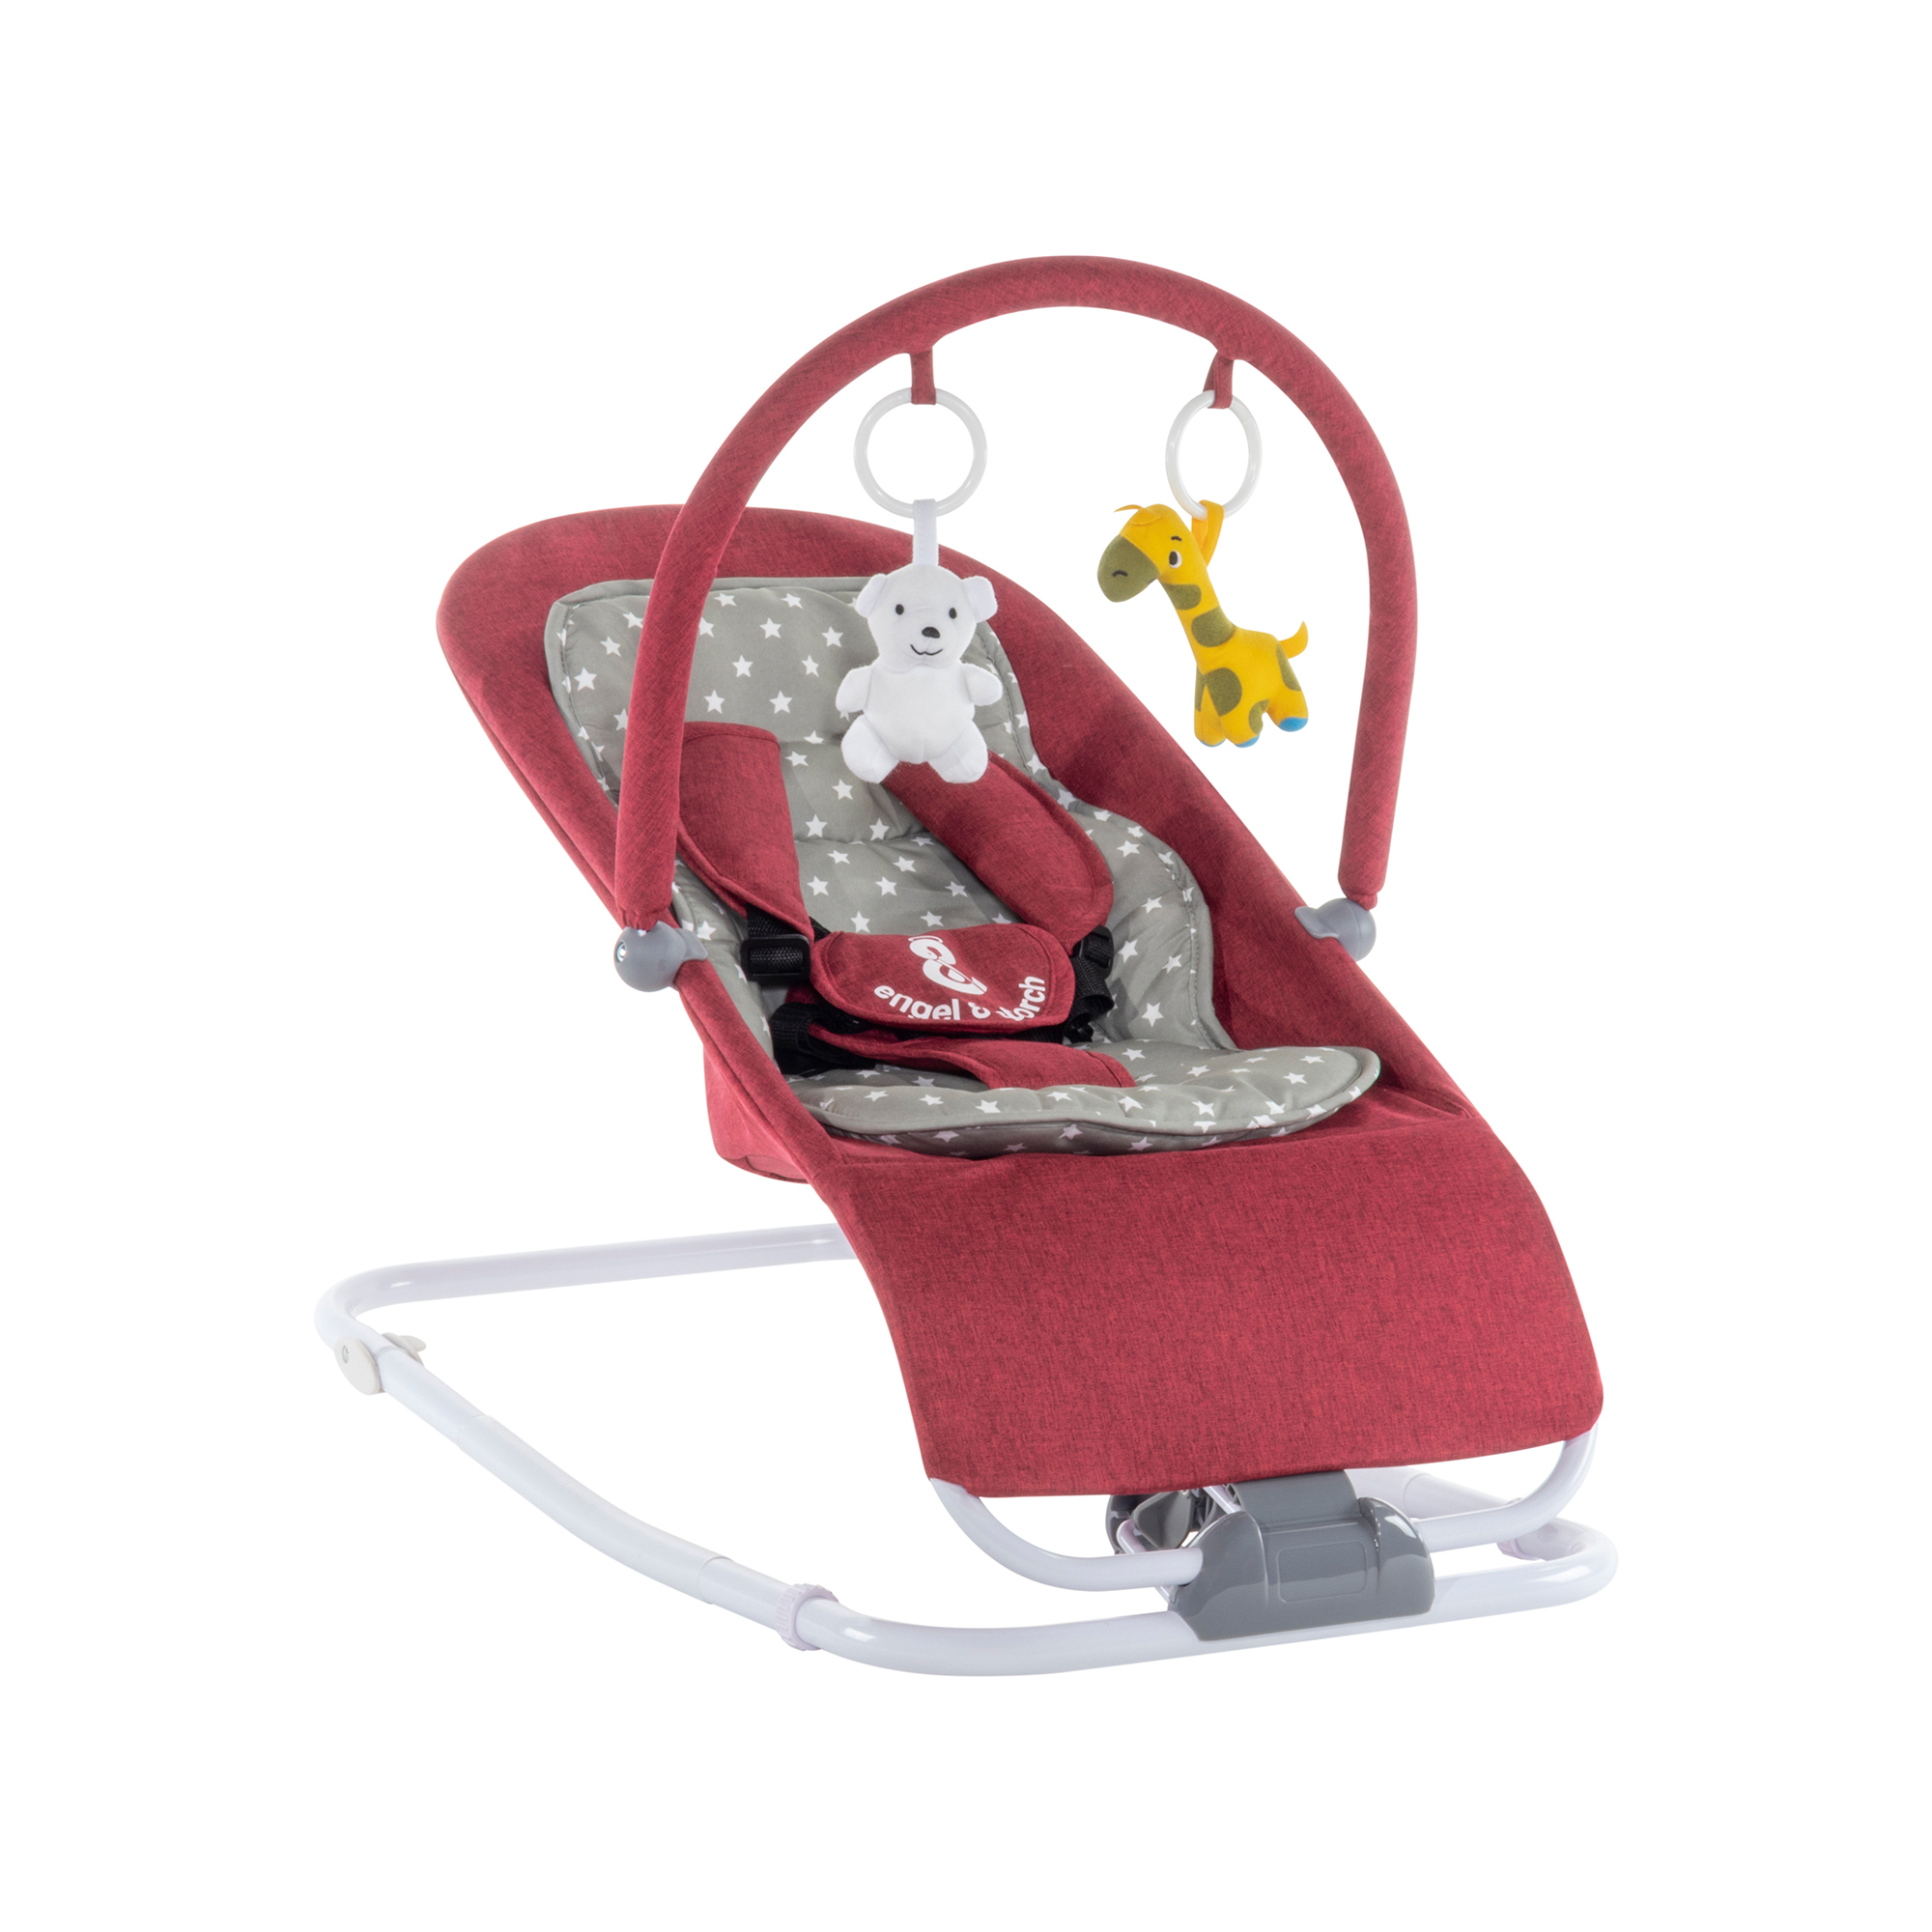 Babywippe VIENO mit abnehmbarem Bezug und Spielebogen Rot + Grau weiße Sterne